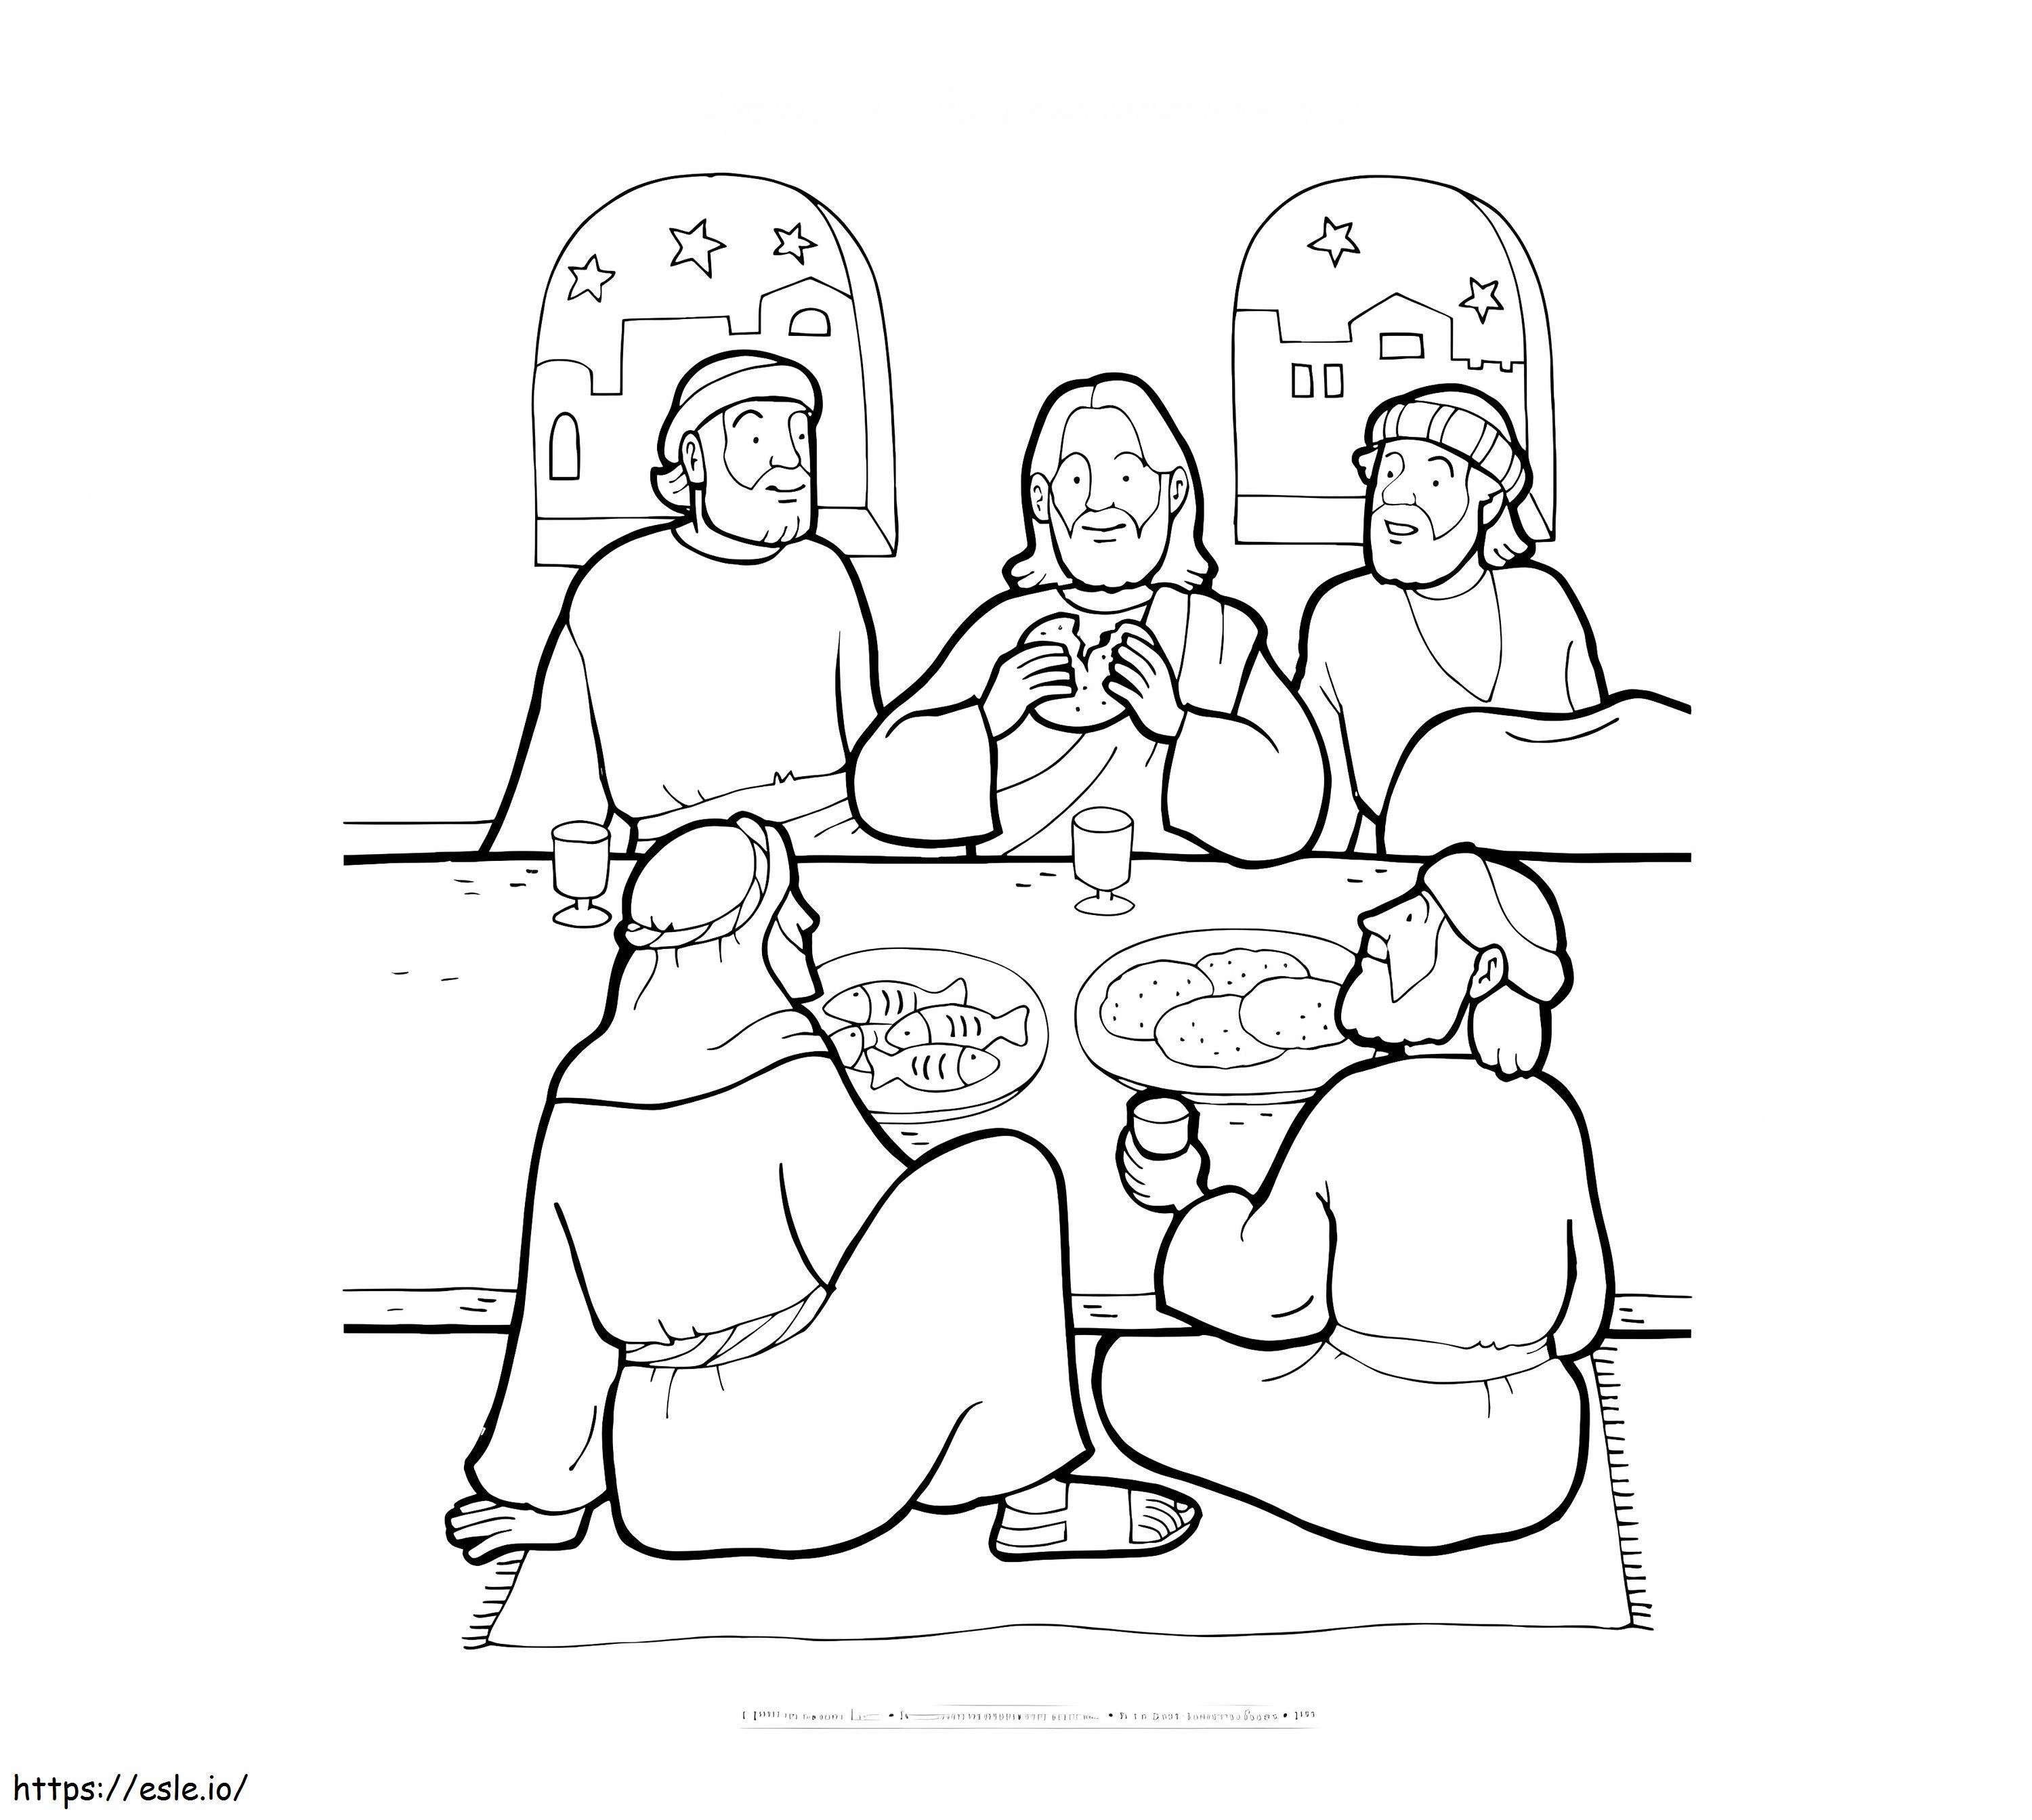 Gesù e gli amici nell'ultima cena da colorare